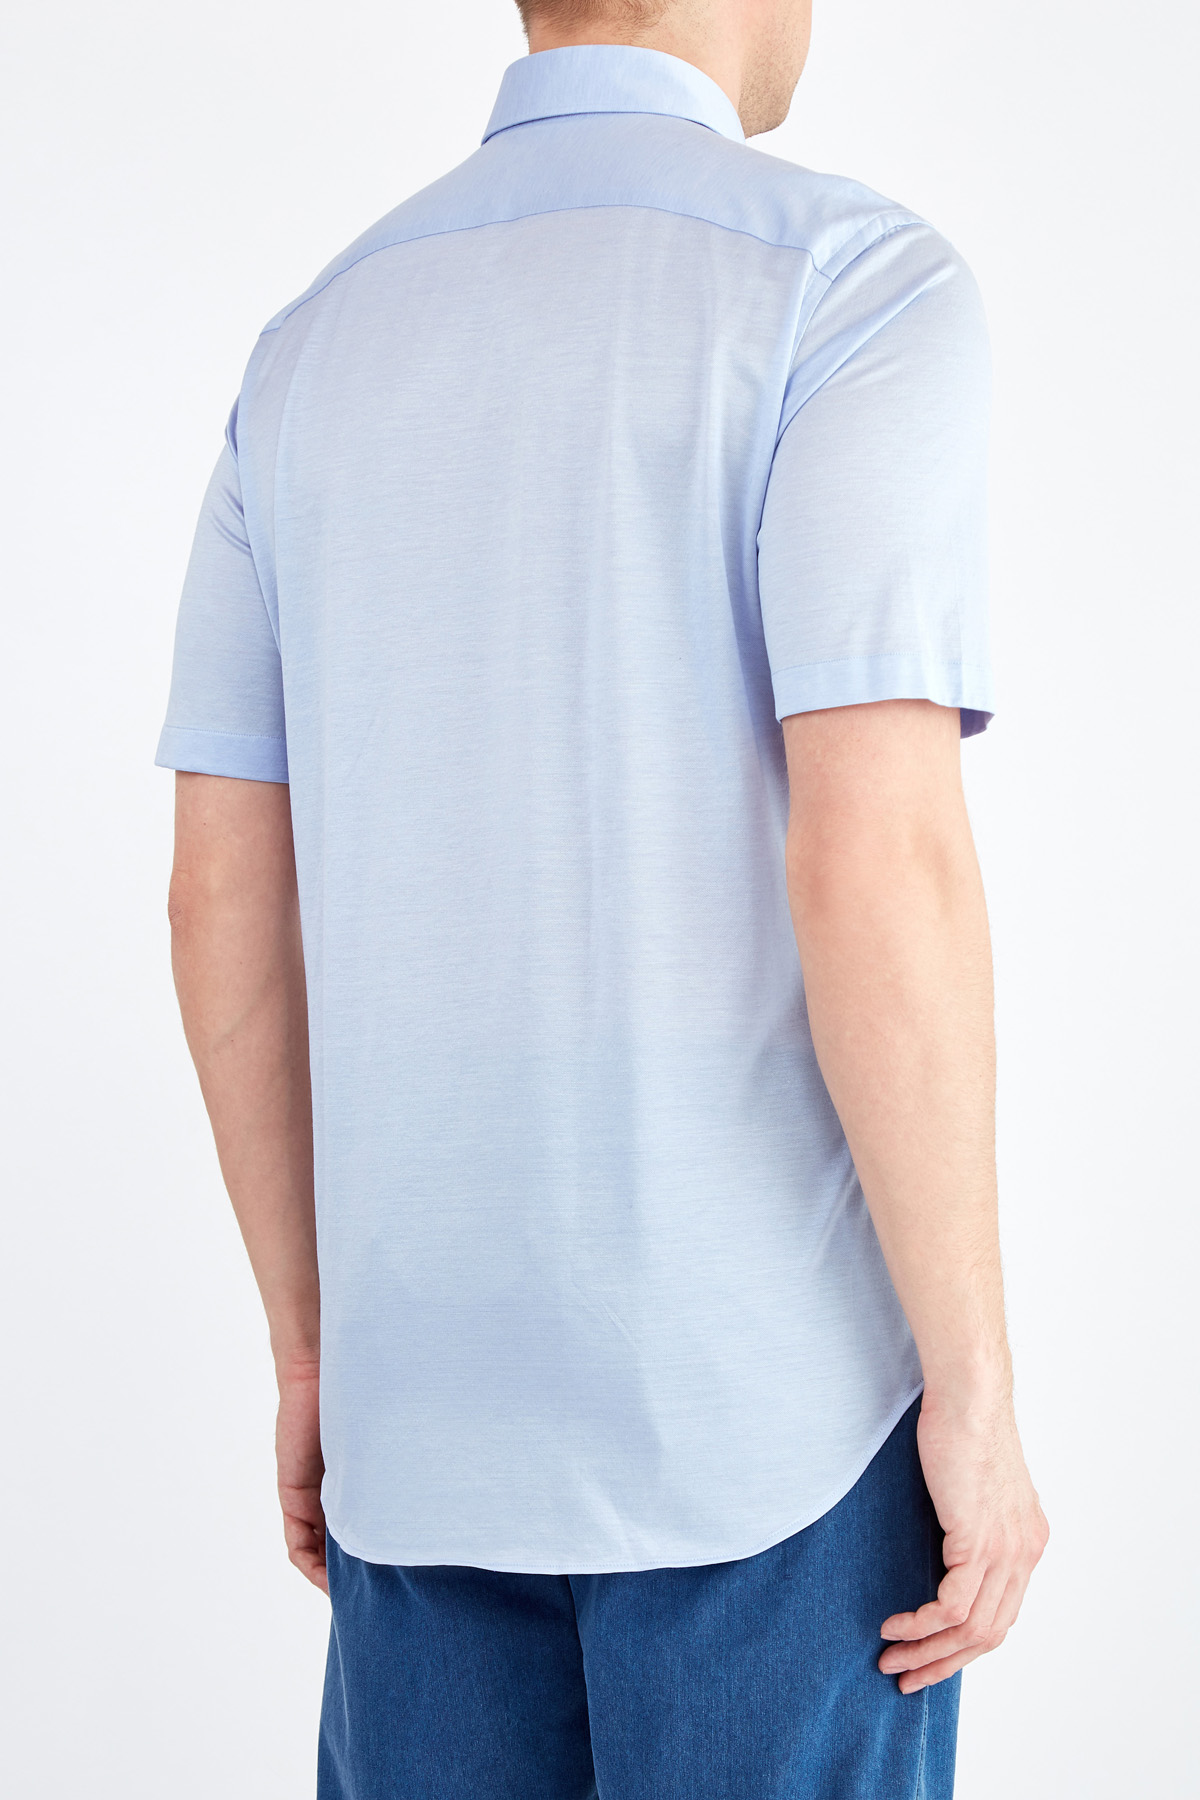 Базовая голубая рубашка с коротким рукавом из пике CANALI, цвет голубой, размер 46 - фото 4